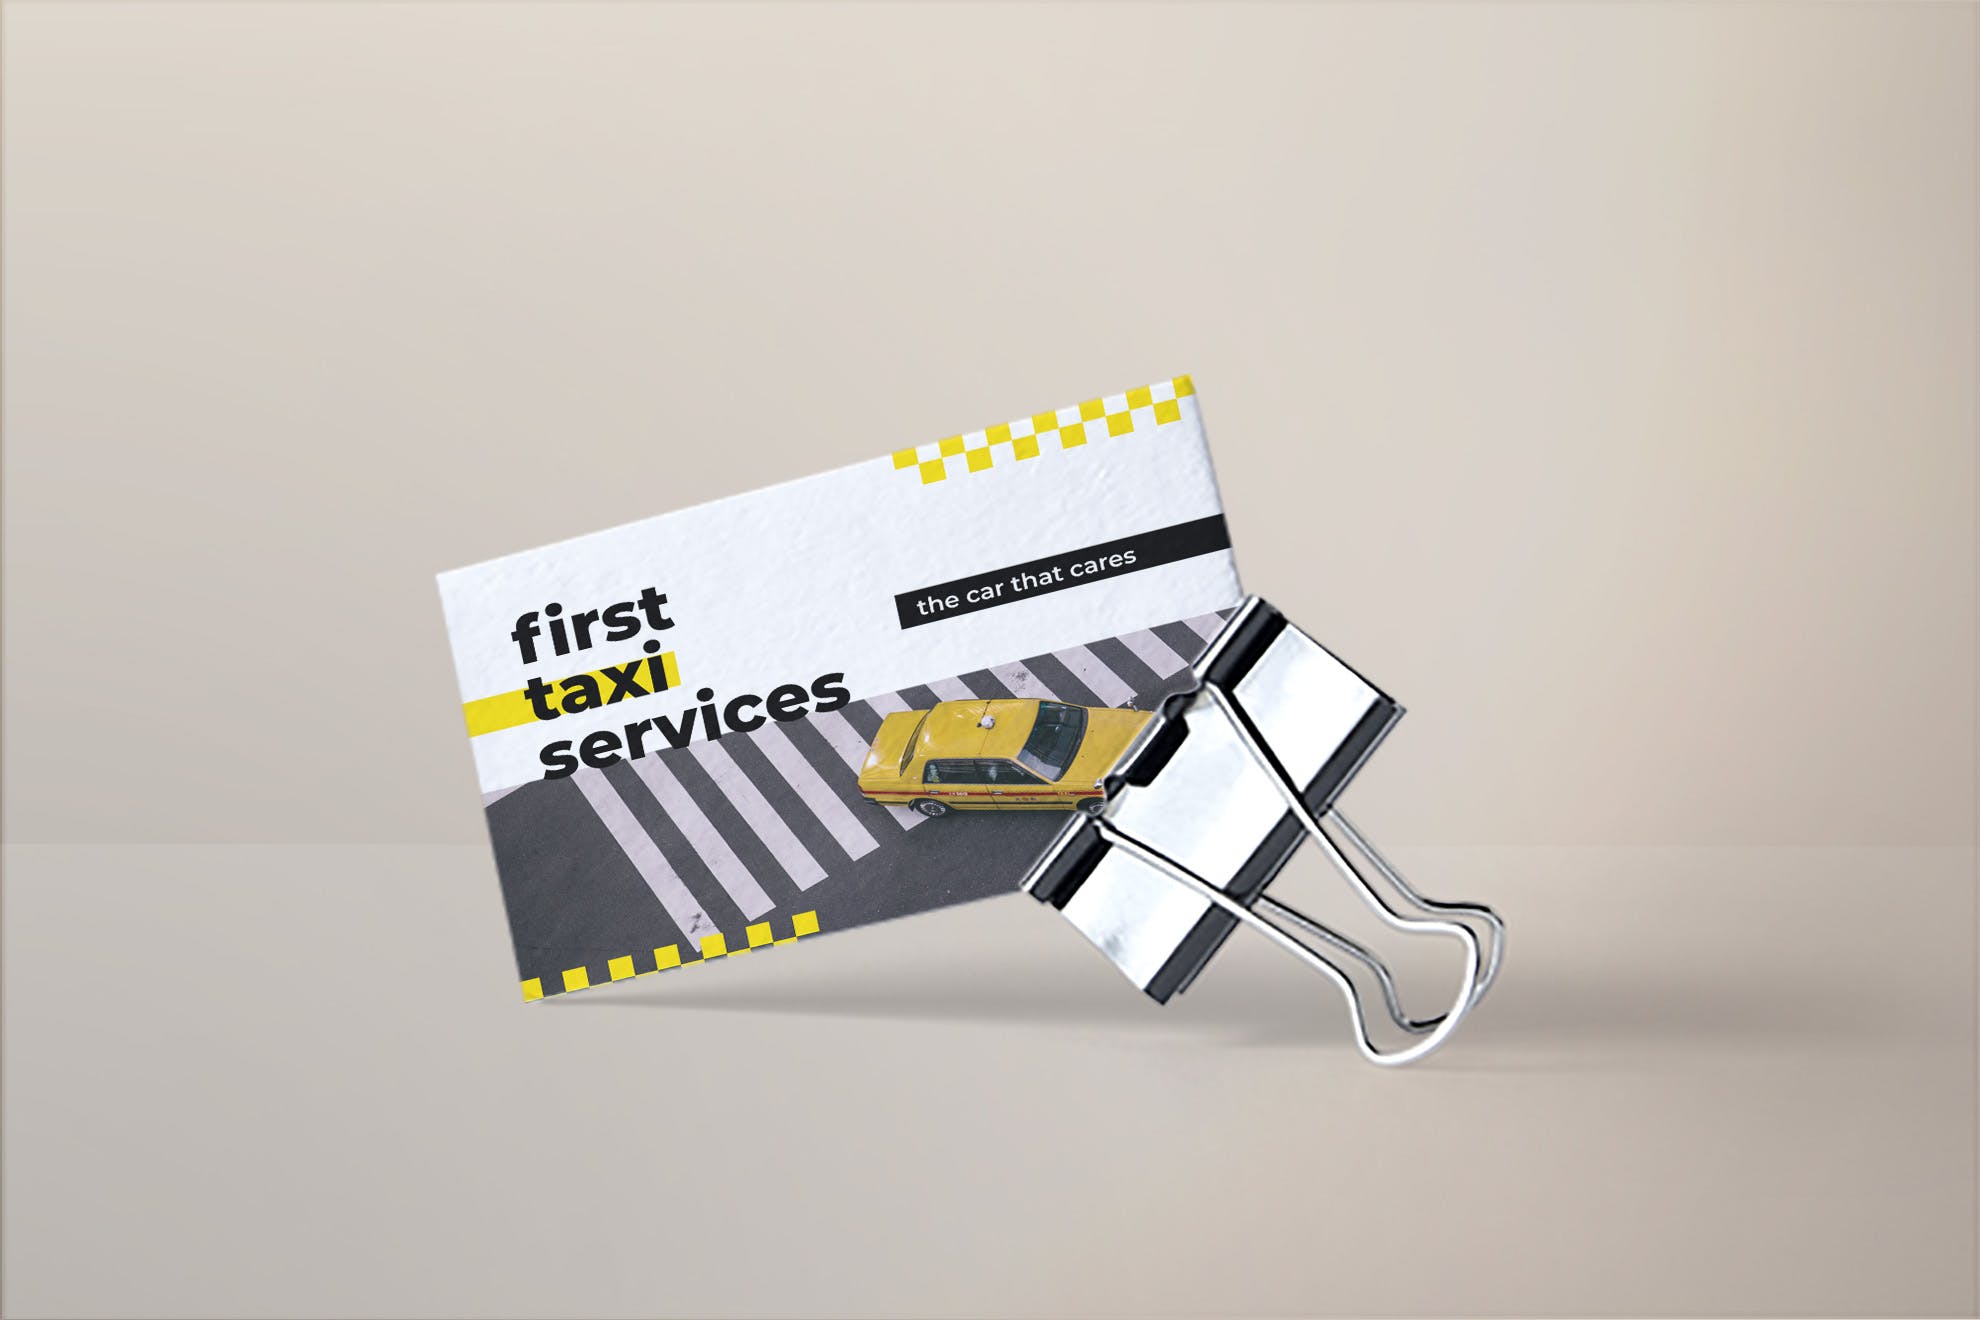 出租车/网约车服务企业司机名片设计模板 Taxi Services Business Card插图1